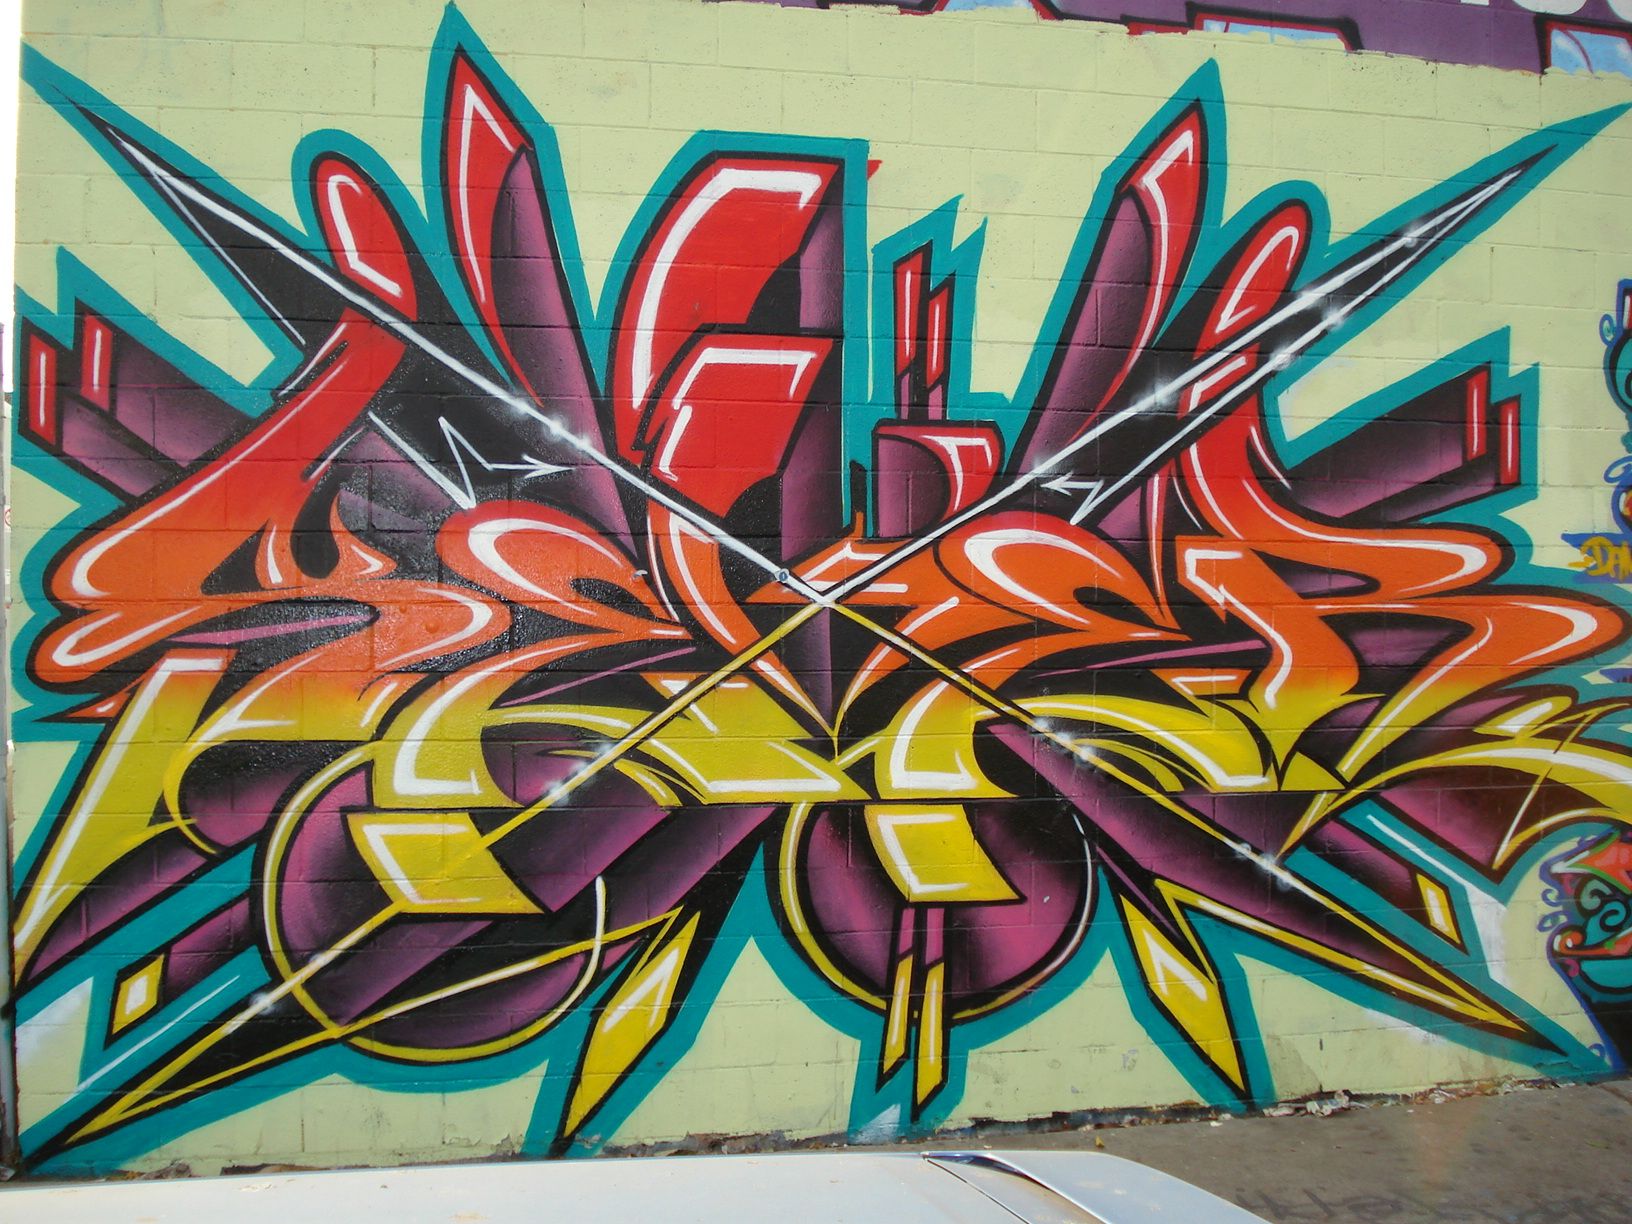 Download Free Dual Monitor Graffiti Wallpaper 1632x1224 | Full HD ...